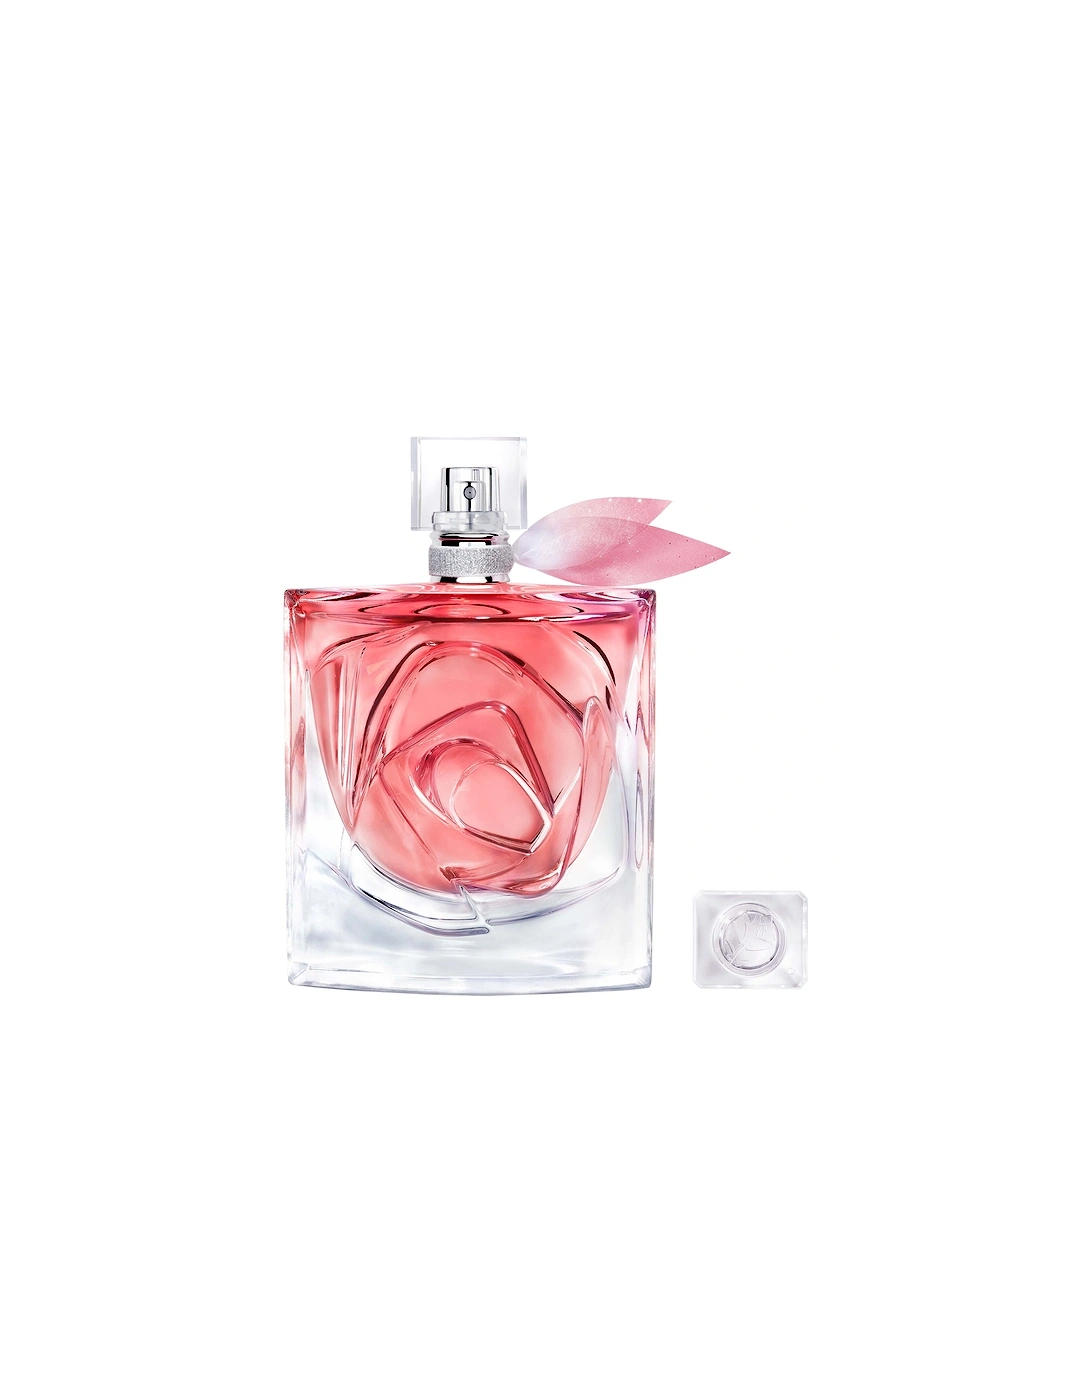 La Vie Est Belle Rose Extraordinaire Eau de Parfum 100ml, 2 of 1